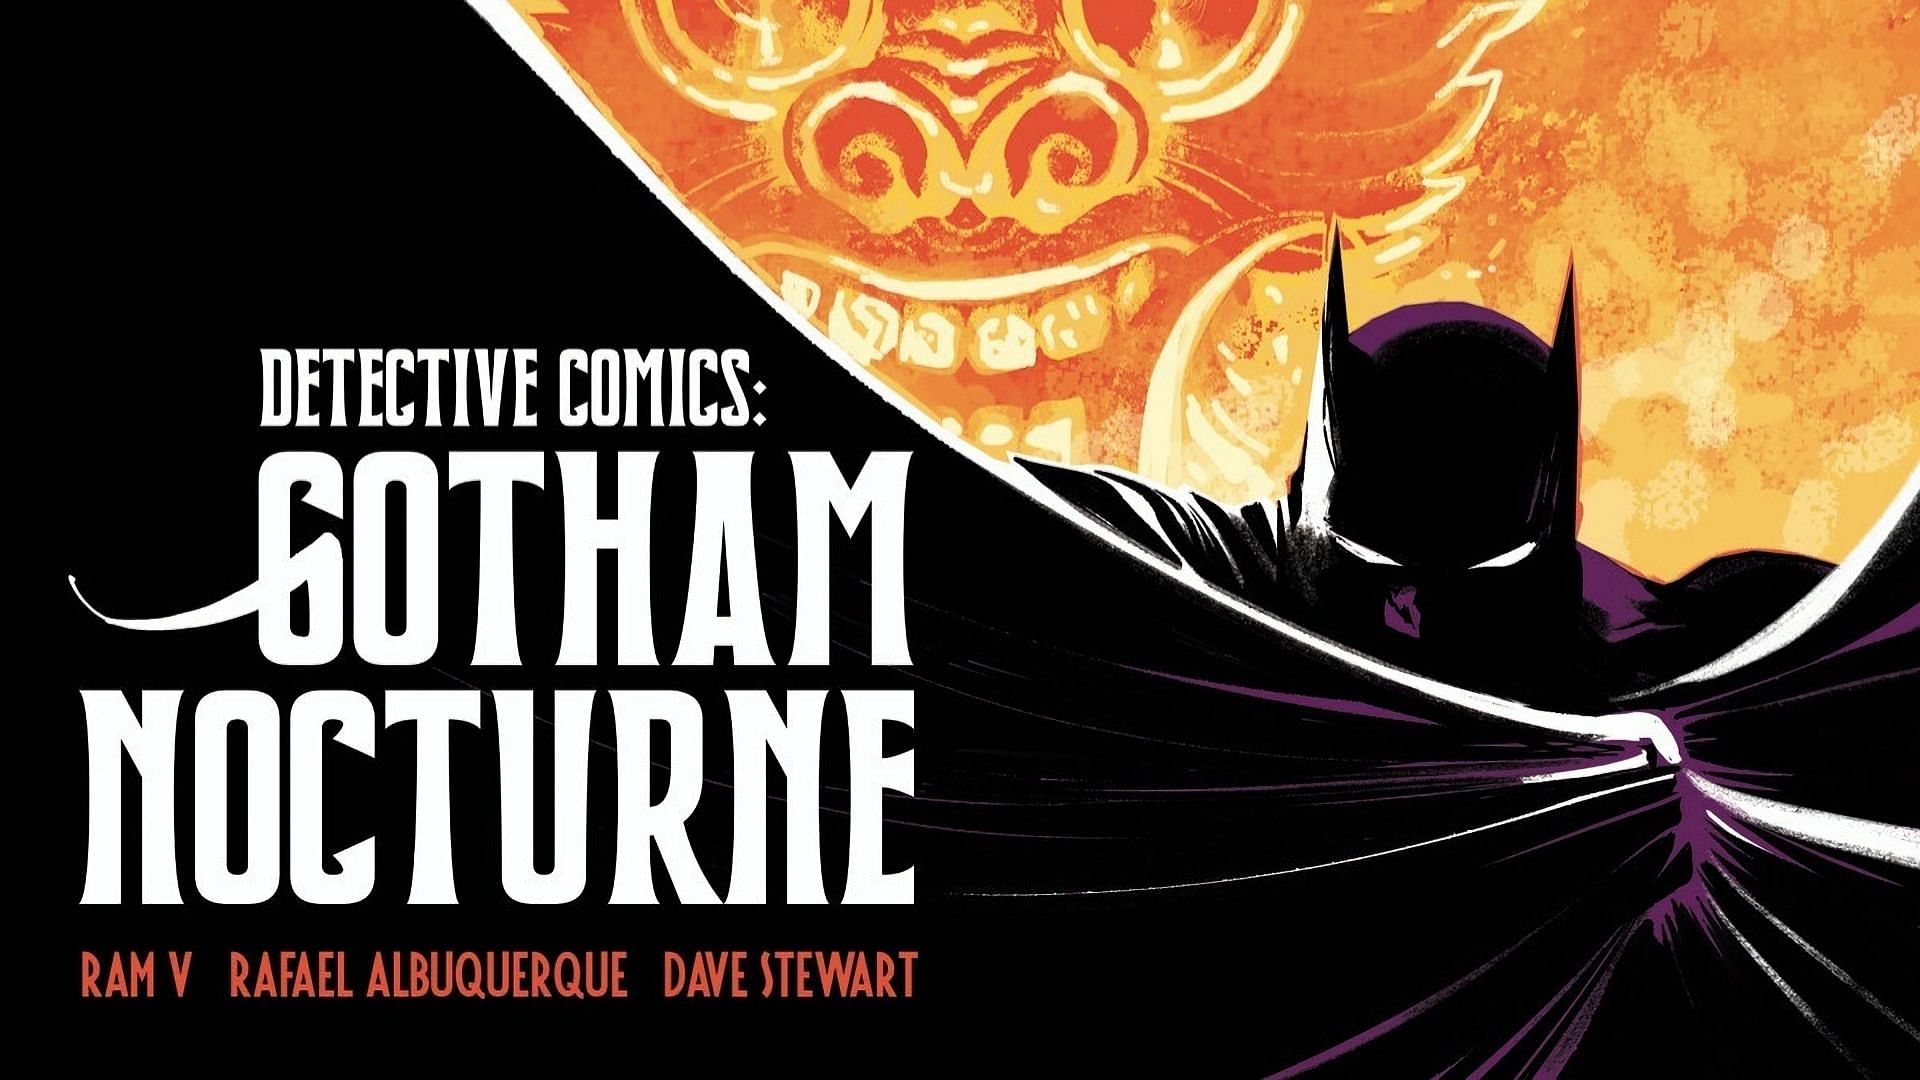 Detective Comics: Gotham Nocturne (Image via DC Comics)